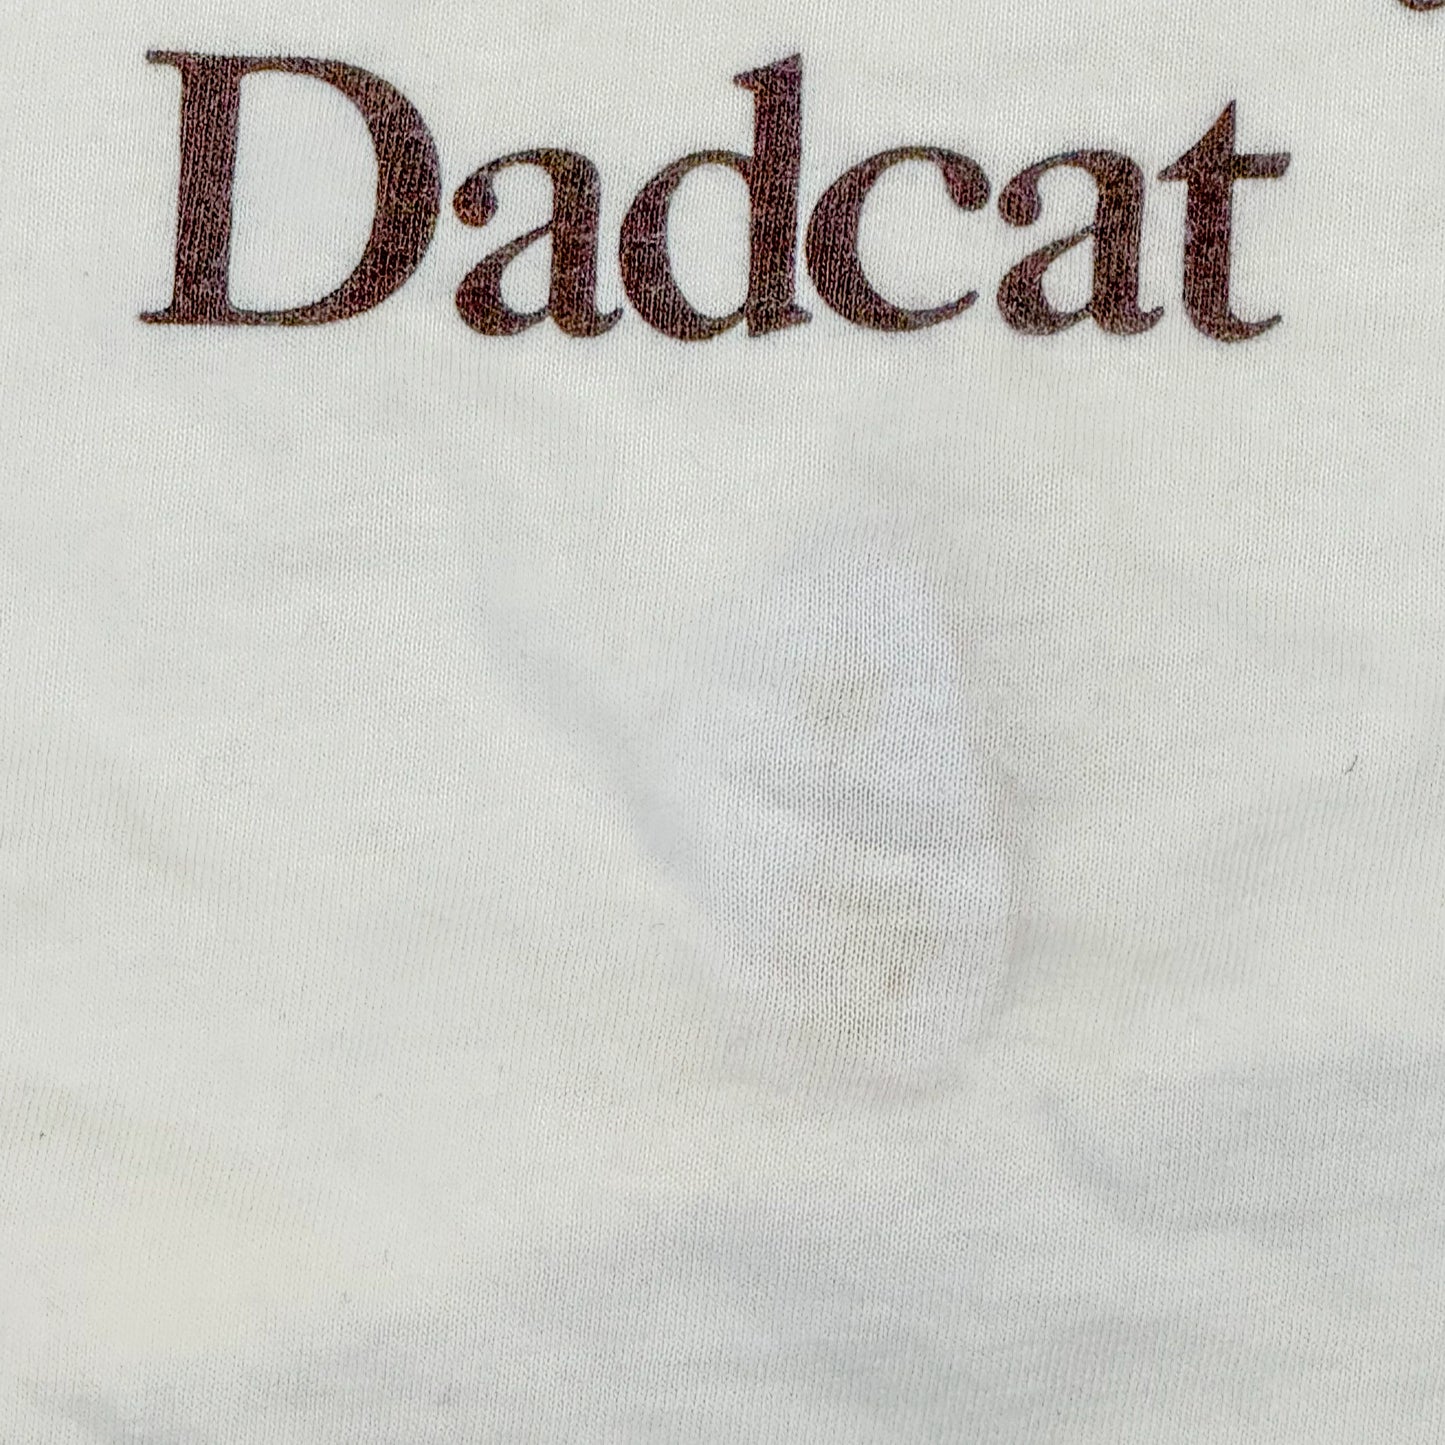 80s crazy shirts アニマル クリバンキャット Dadcat ホワイト L - Tee-Boy